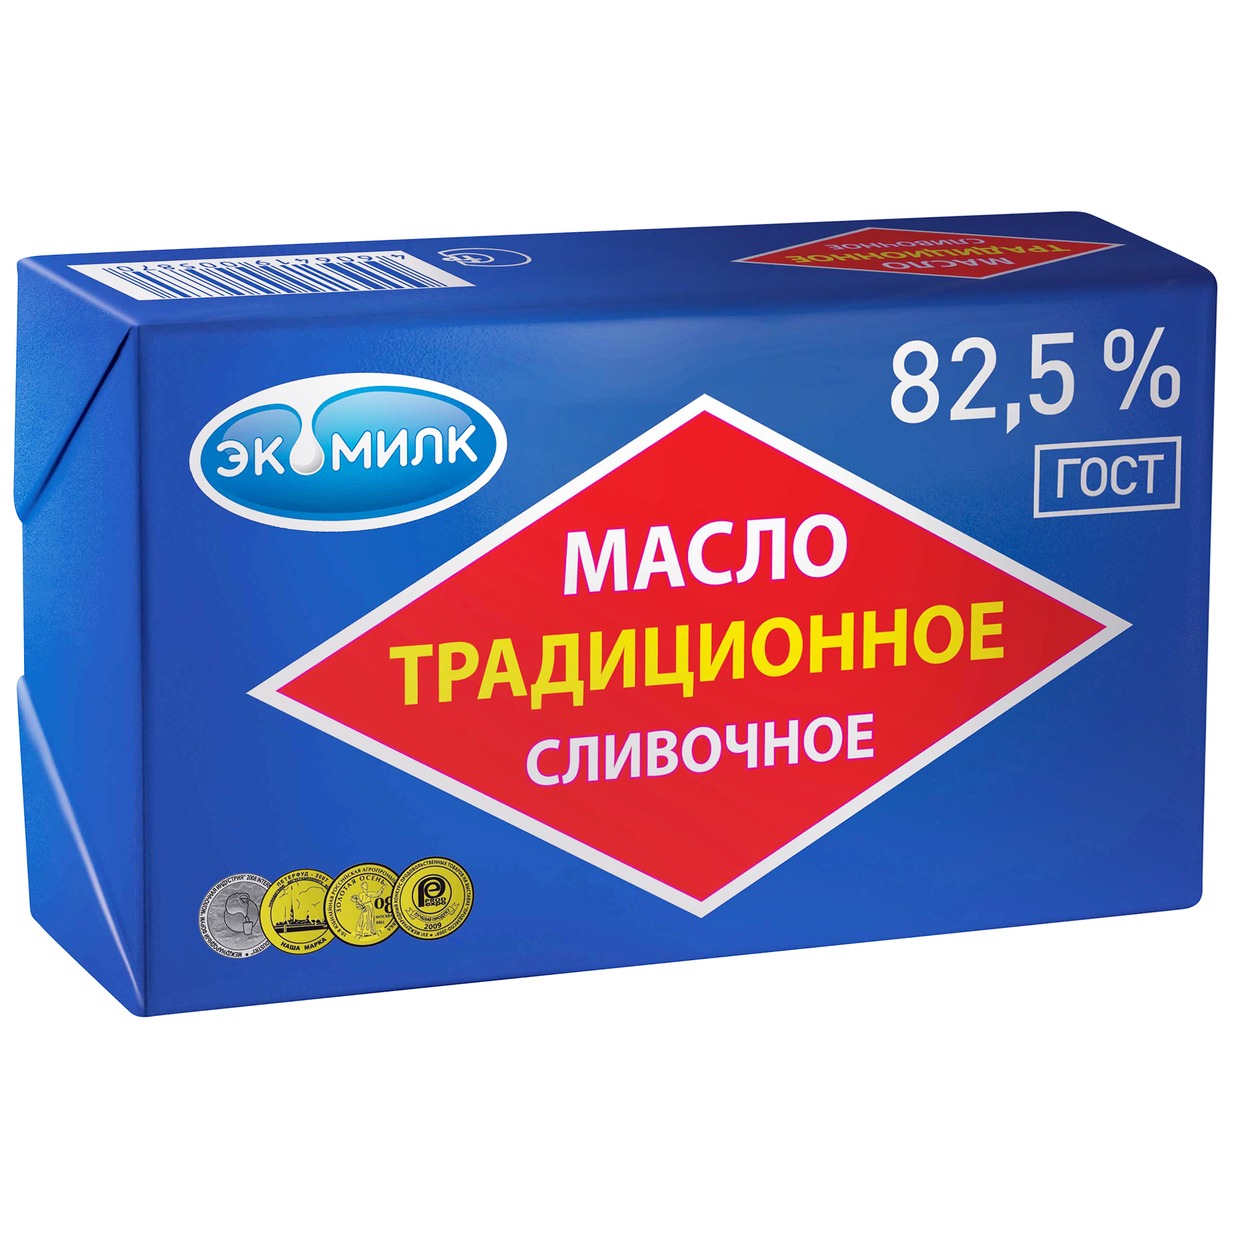 Масло сливочное Экомилк, 82,5%, 180 г по акции в Пятерочке